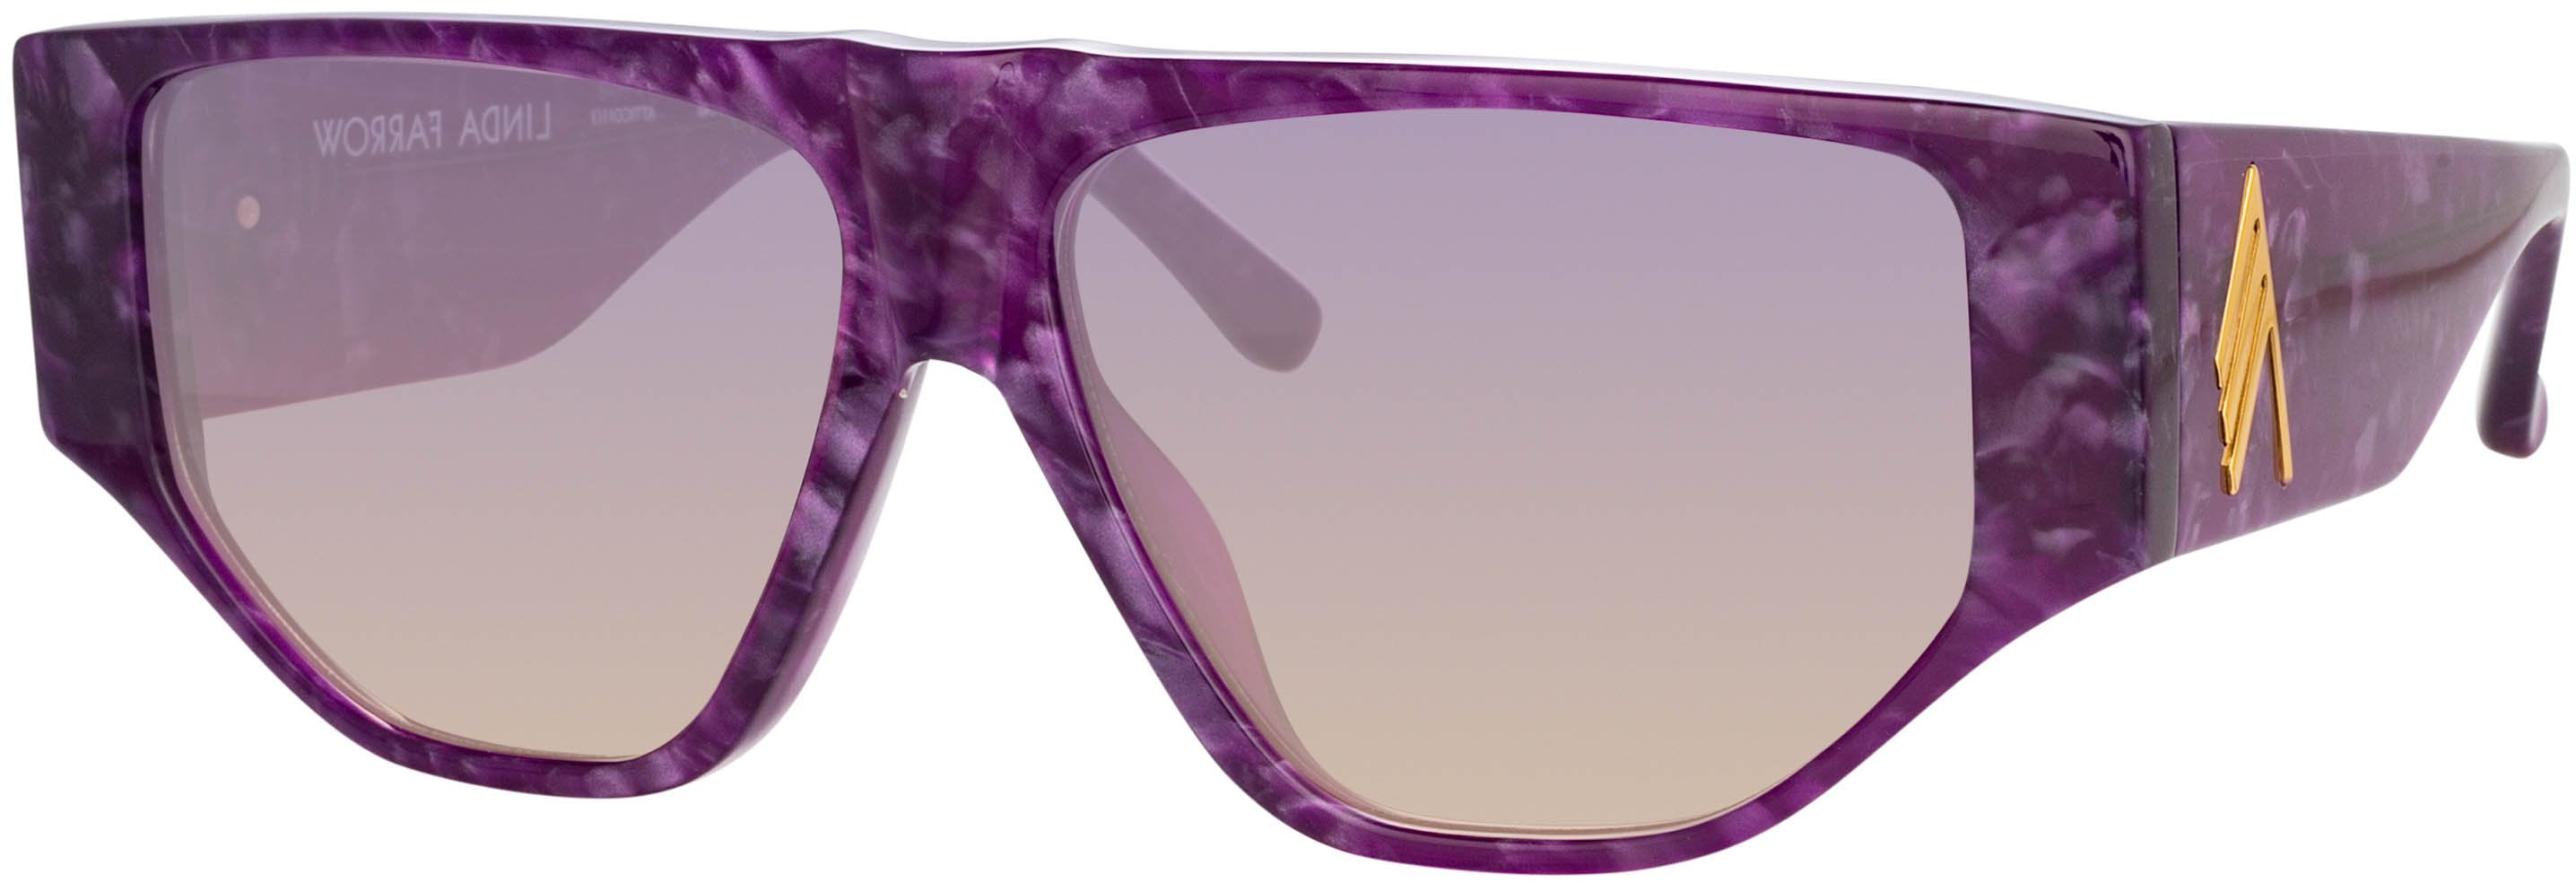 Color_ATTICO11C3SUN - The Attico Ivan Angular Sunglasses in Purple Pearl